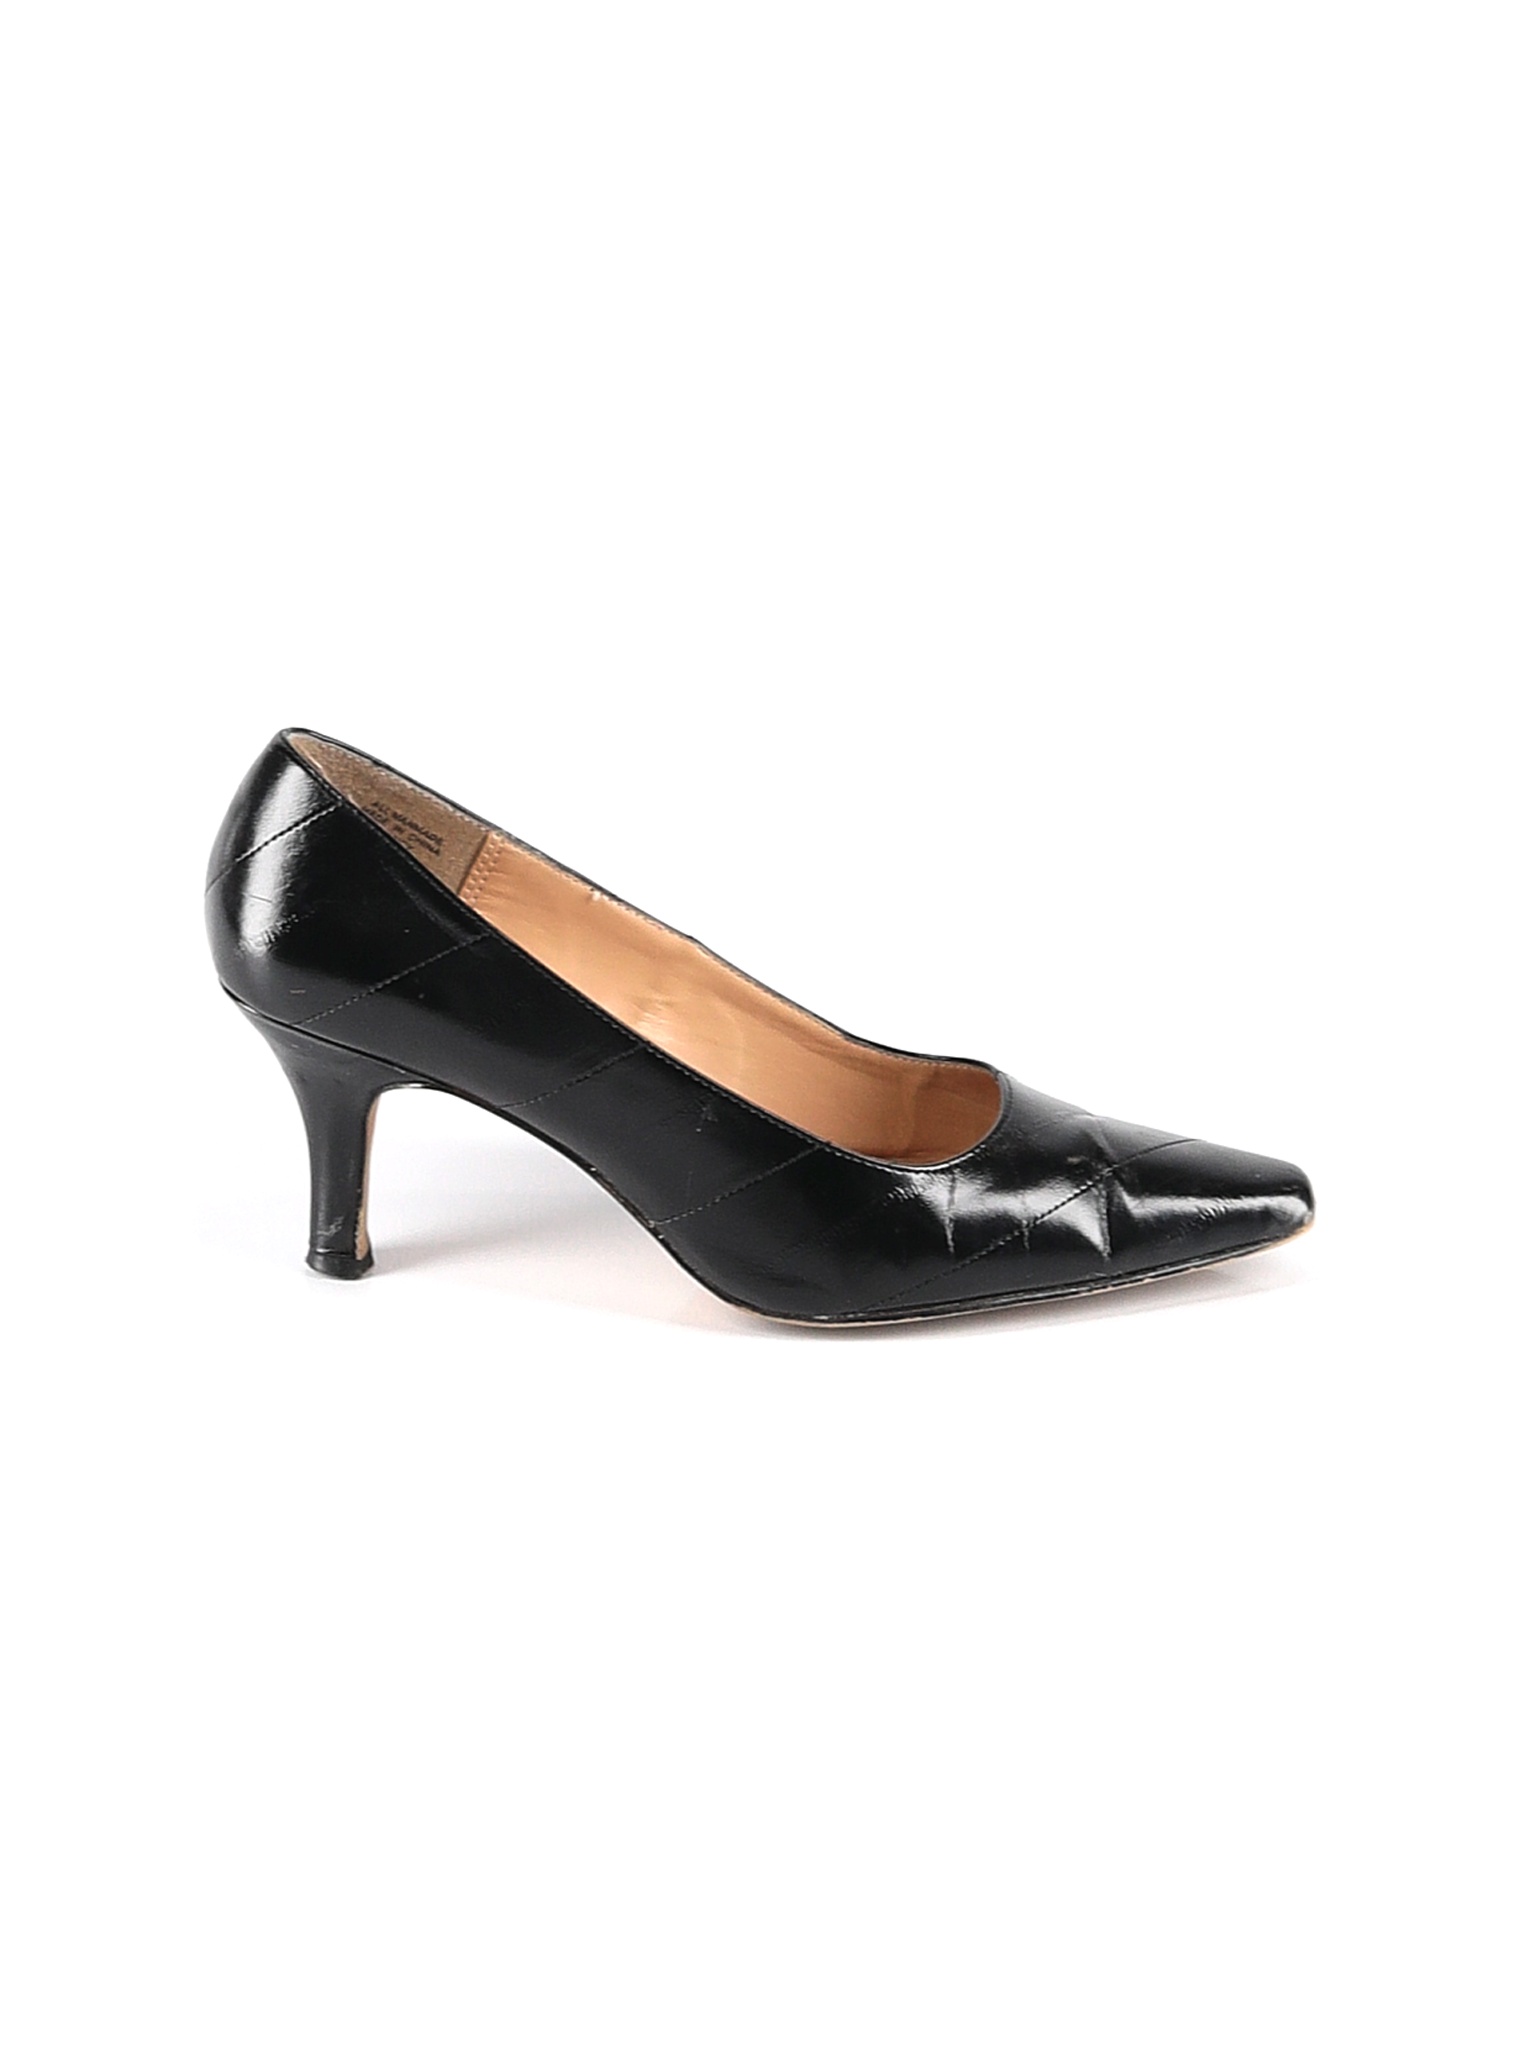 Karen Scott Women Black Heels US 9.5 | eBay